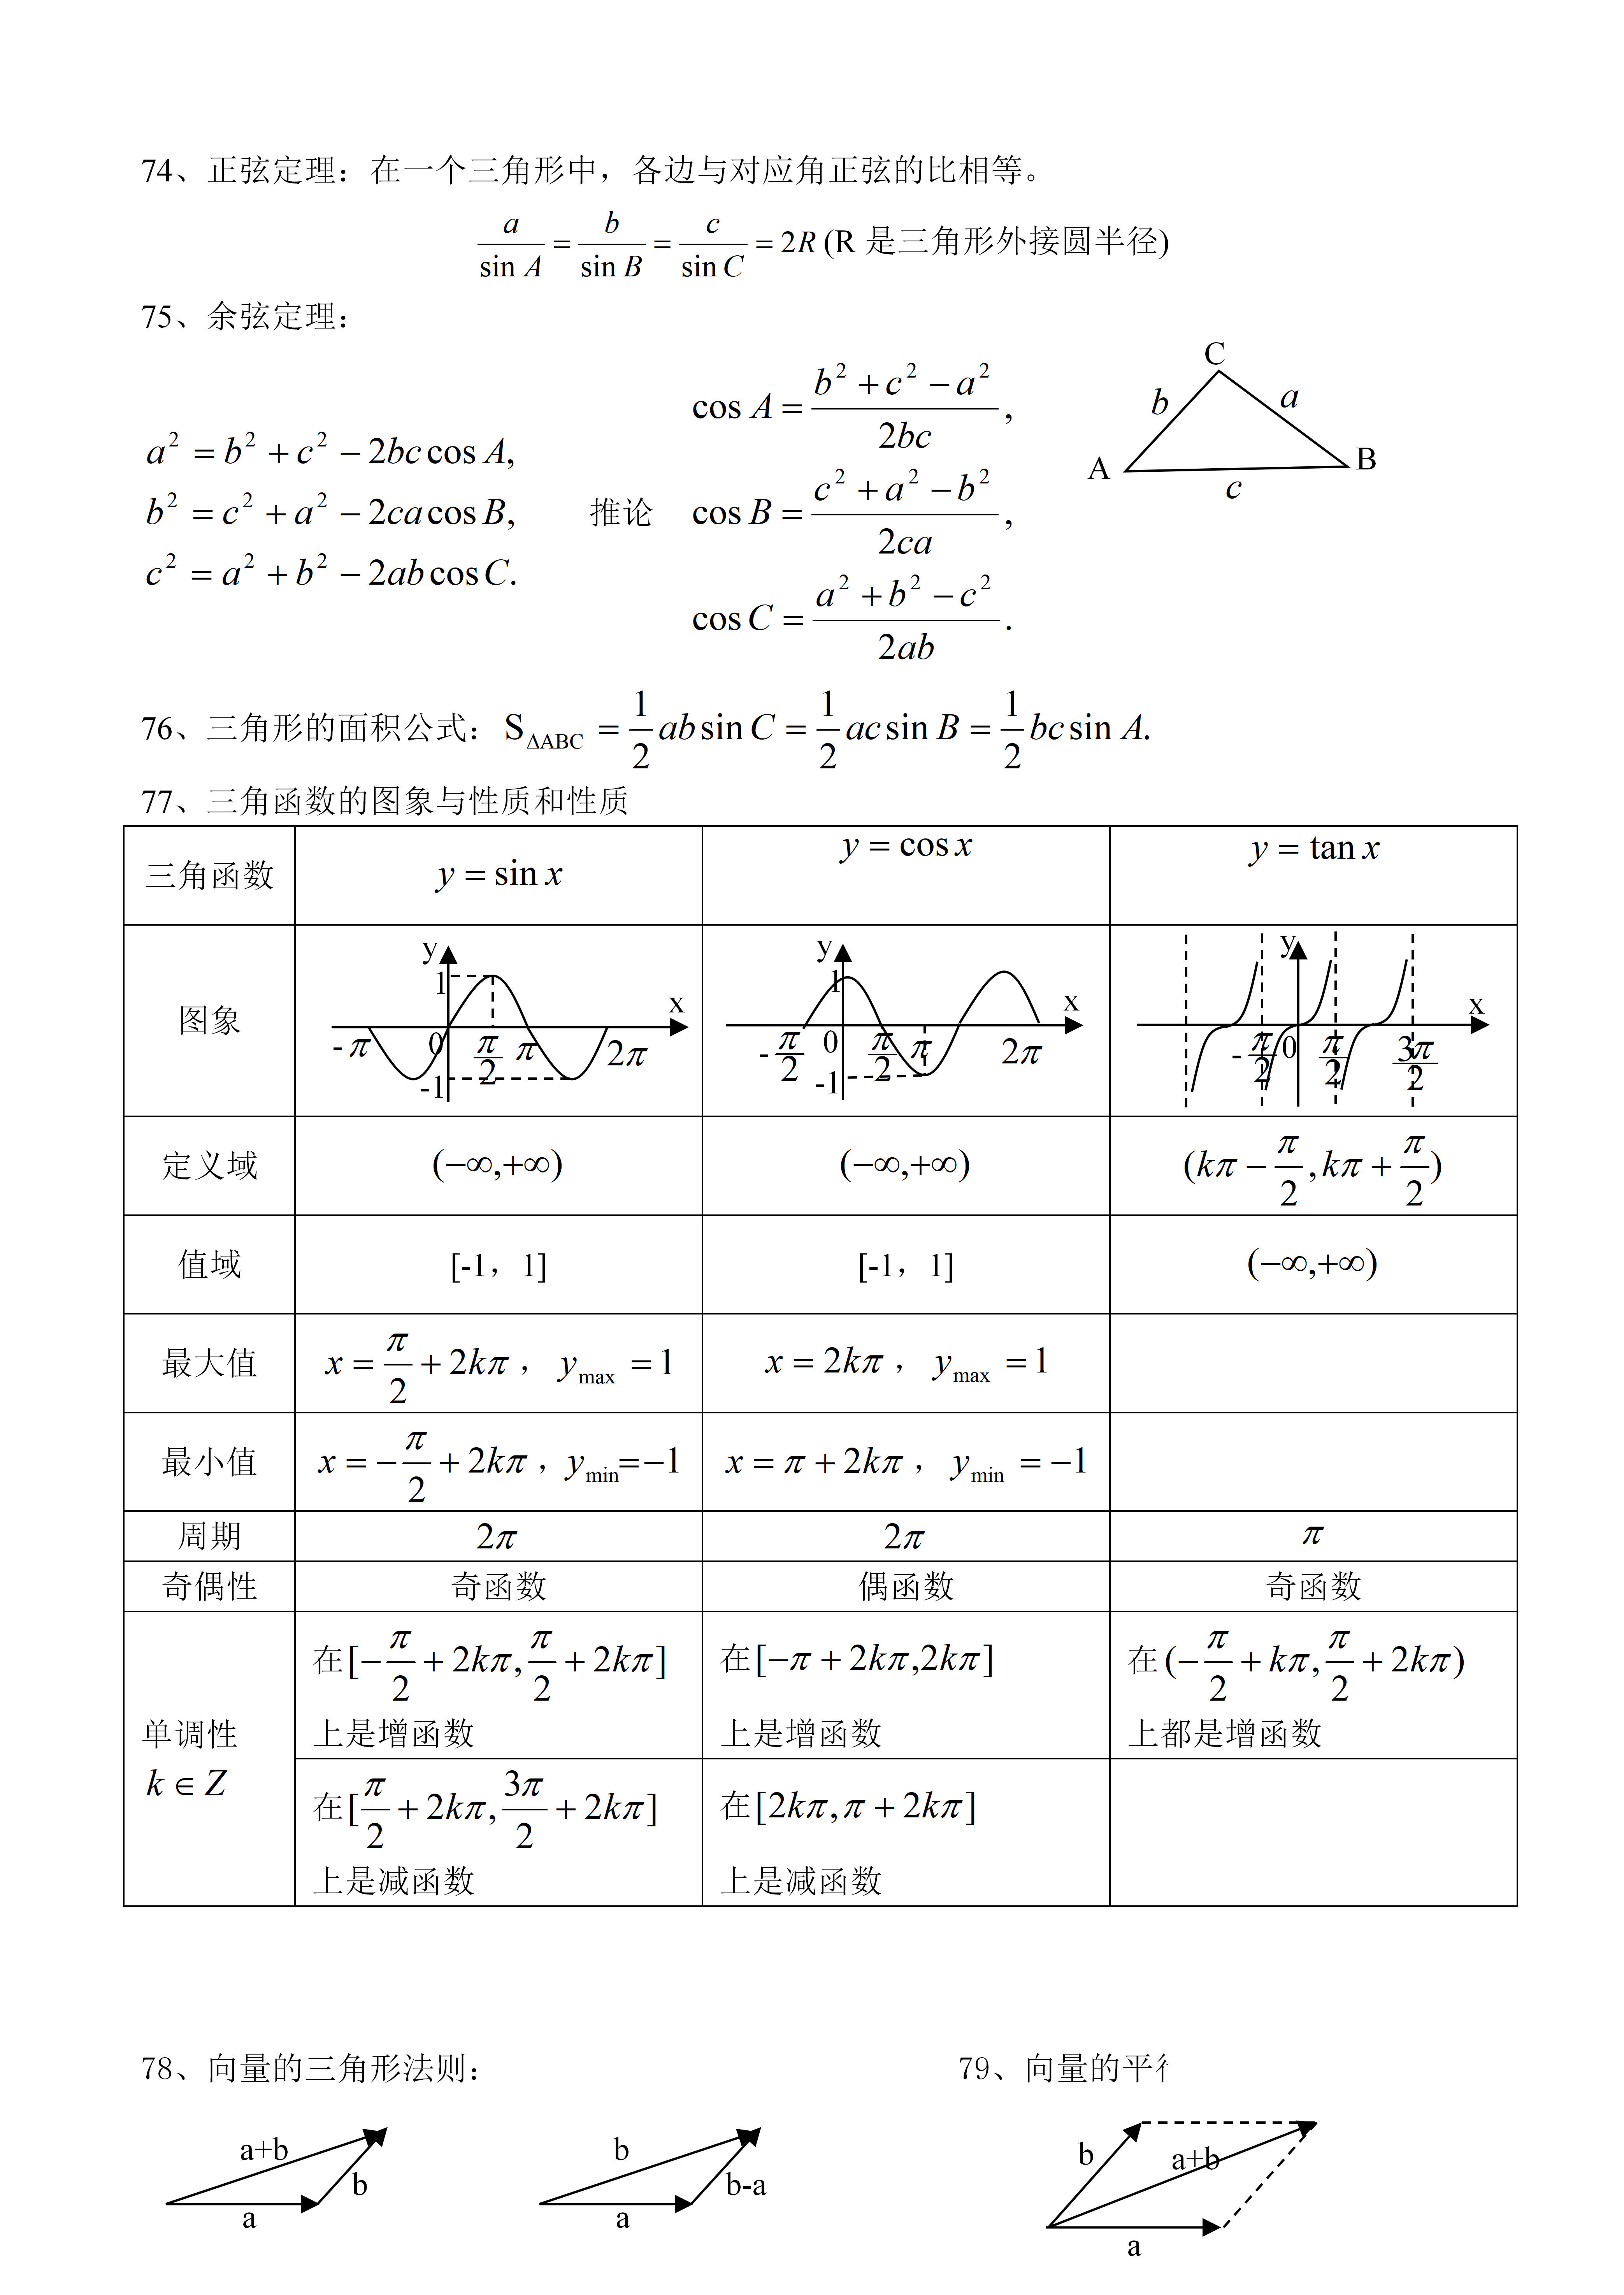 数学公式壁纸_数学公式高清壁纸_微信公众号文章